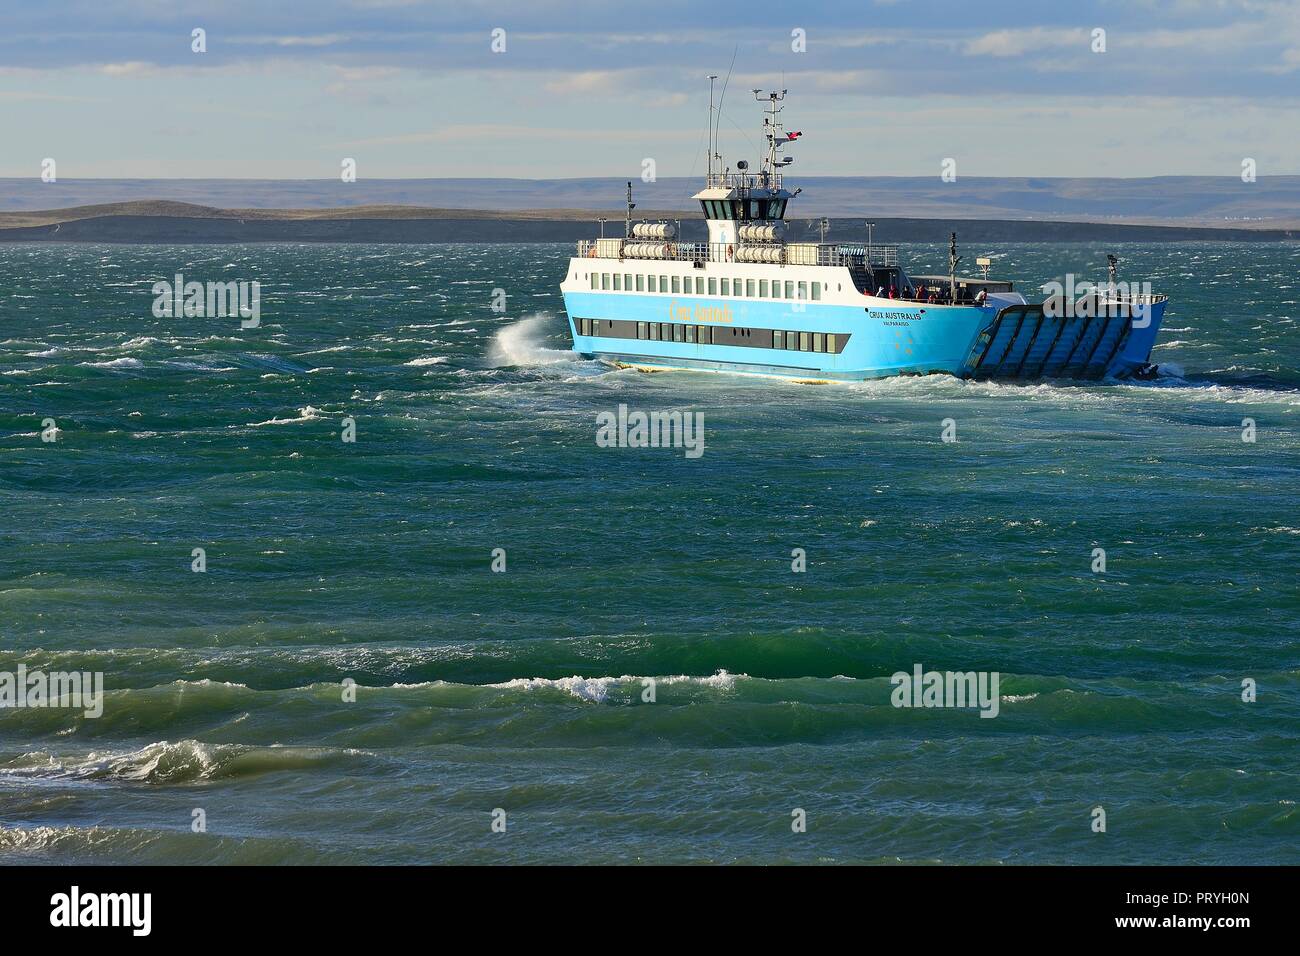 Ferry from Bahia Azul to Punta Delgada via the Strait of Magellan, Tierra del Fuego Province, Tierra del Fuego, Chile Stock Photo